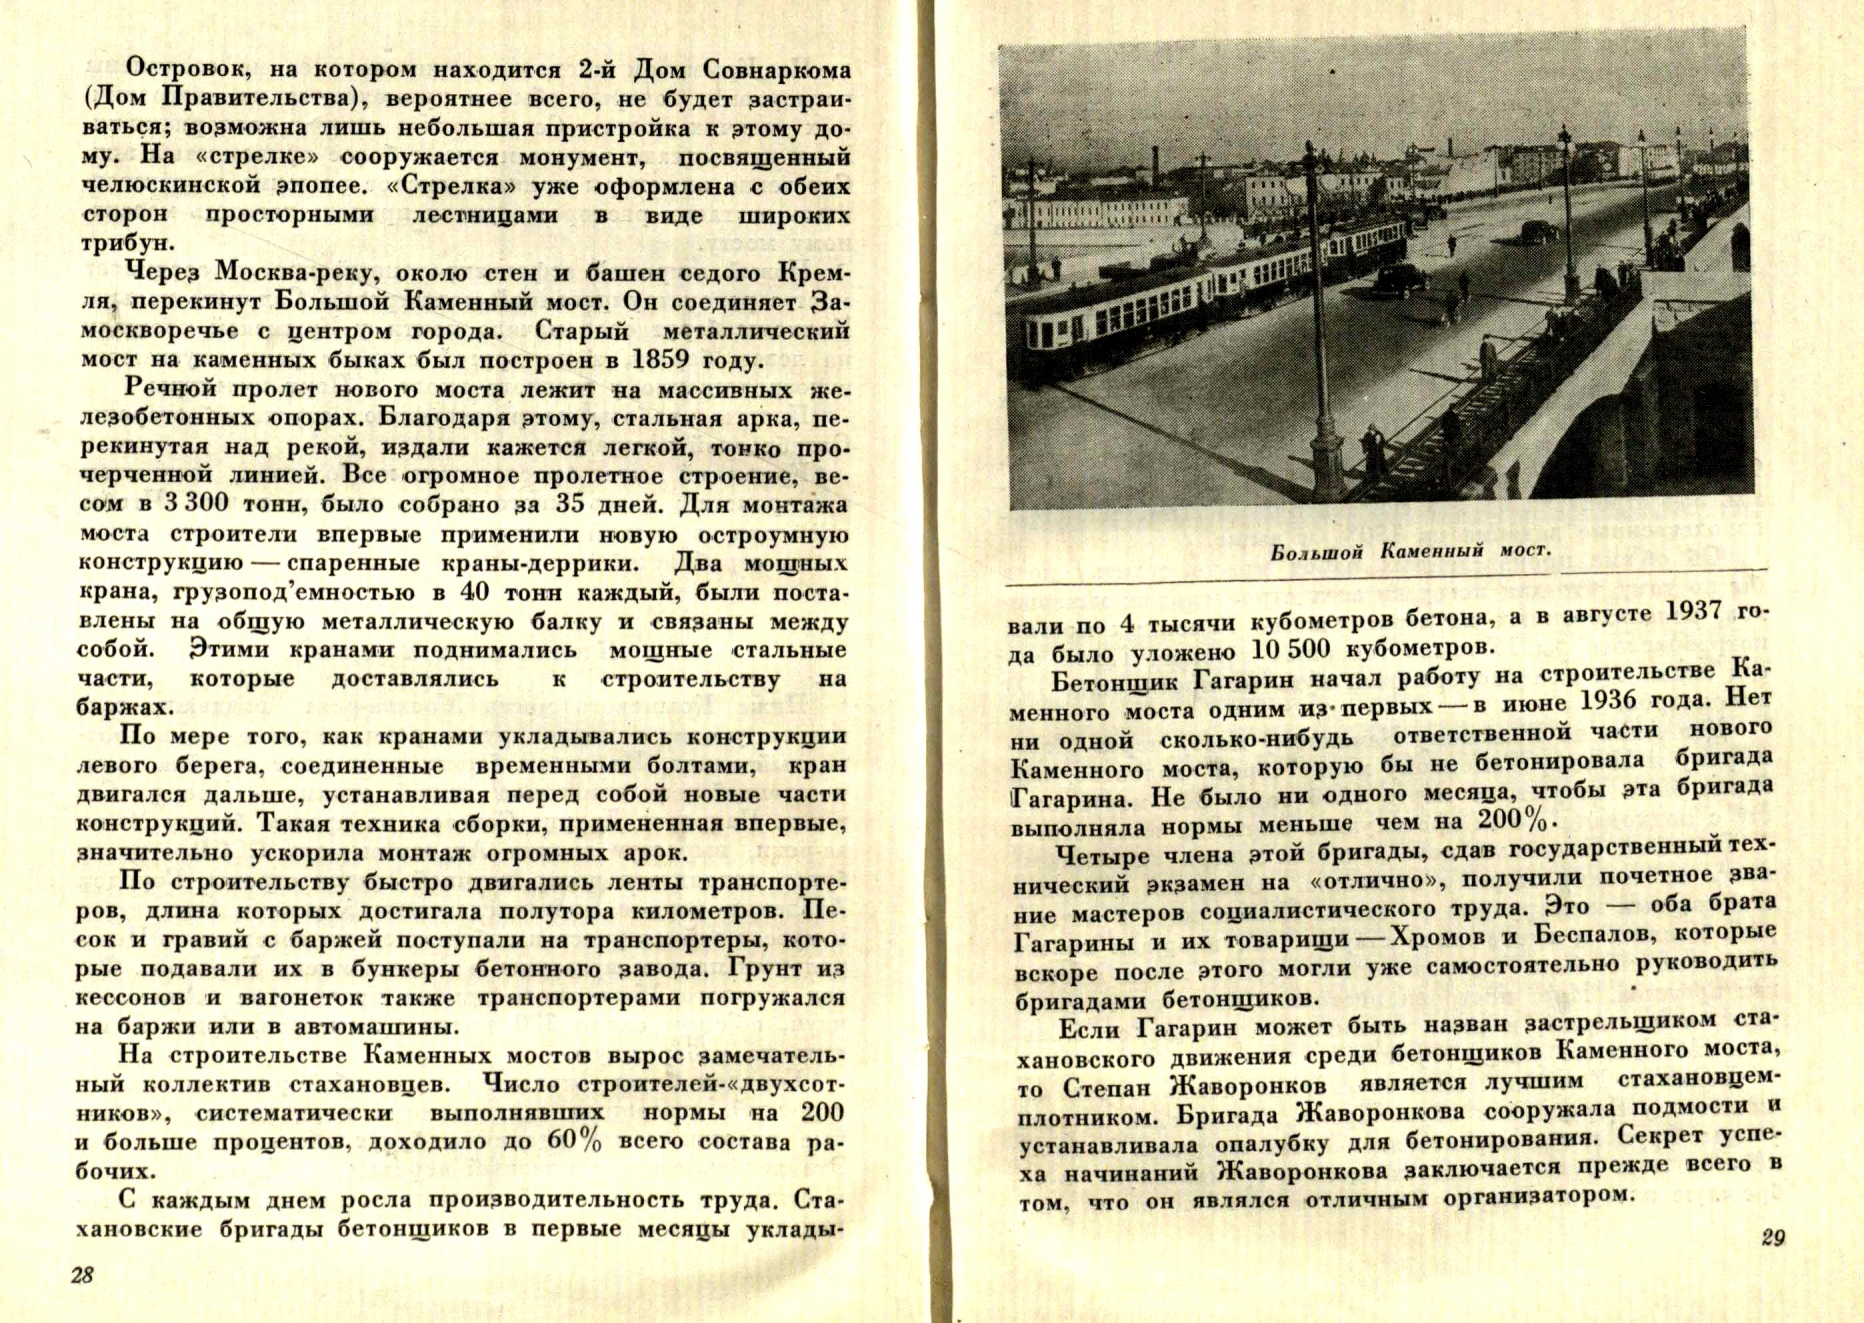 Мосты и набережные столицы / Е. Симонов. — Москва : Московский рабочий, 1938